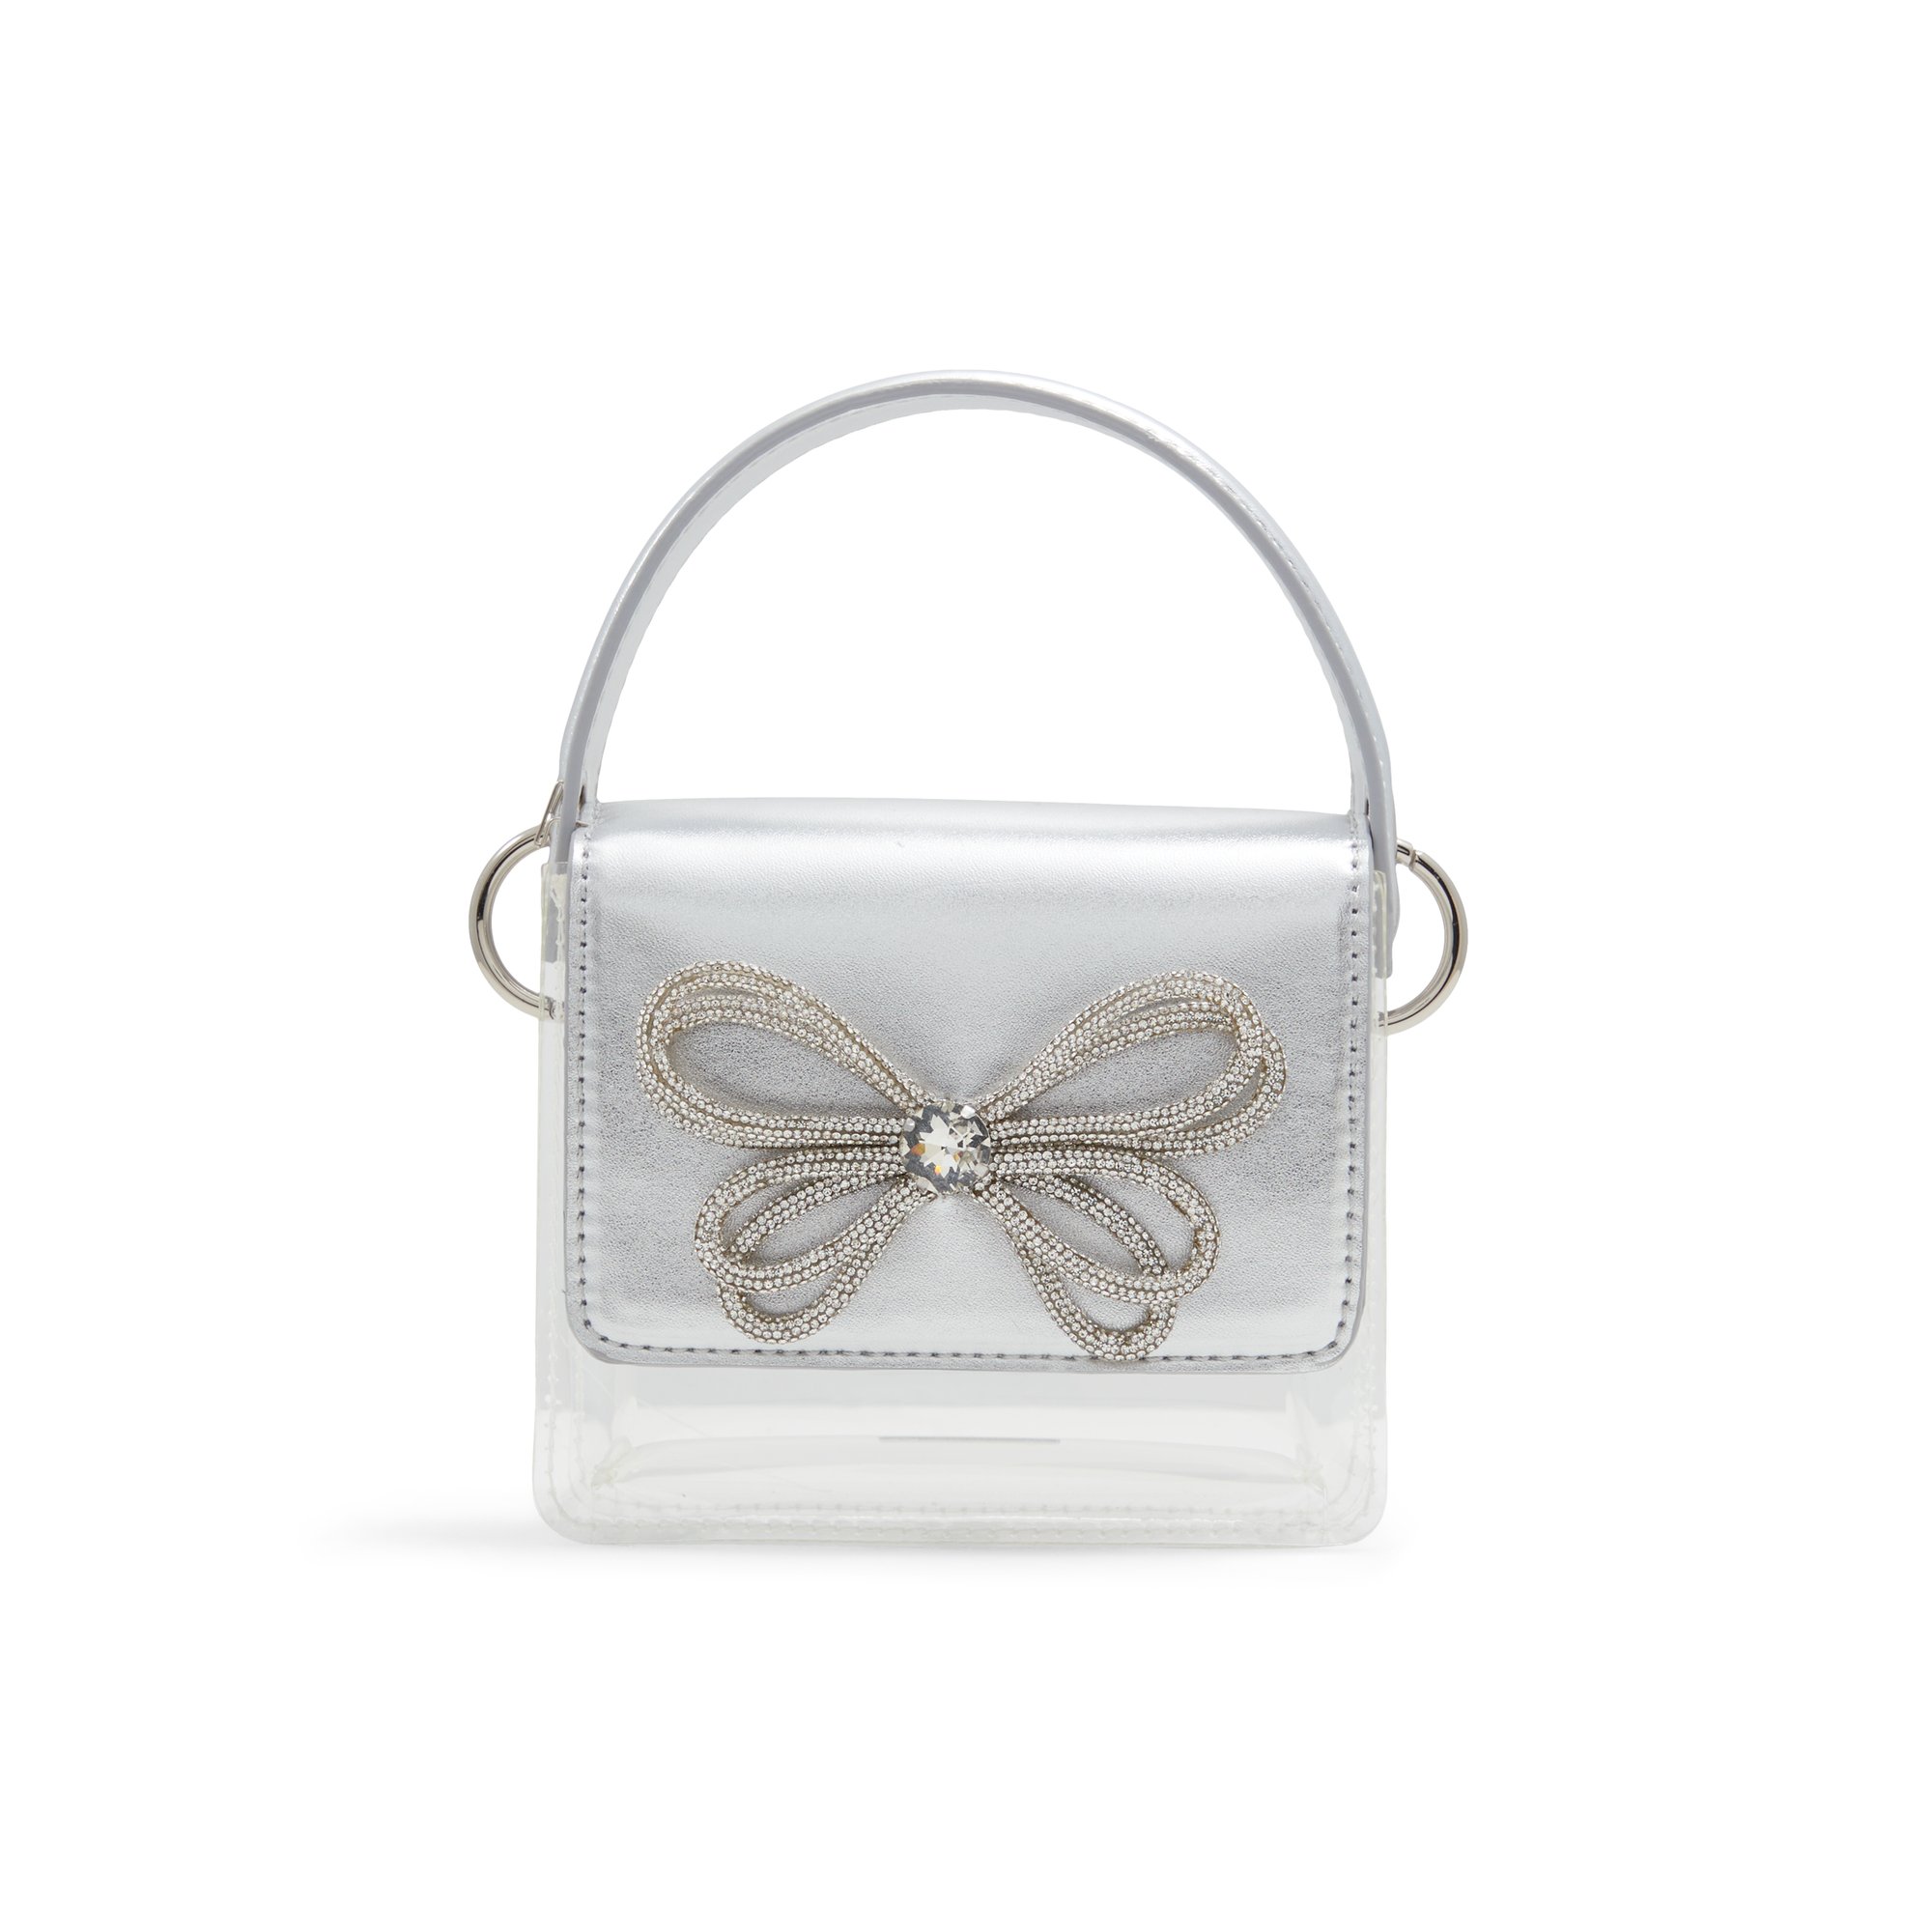 ALDO Fleurix - Women's Mini Bag Handbag - Silver